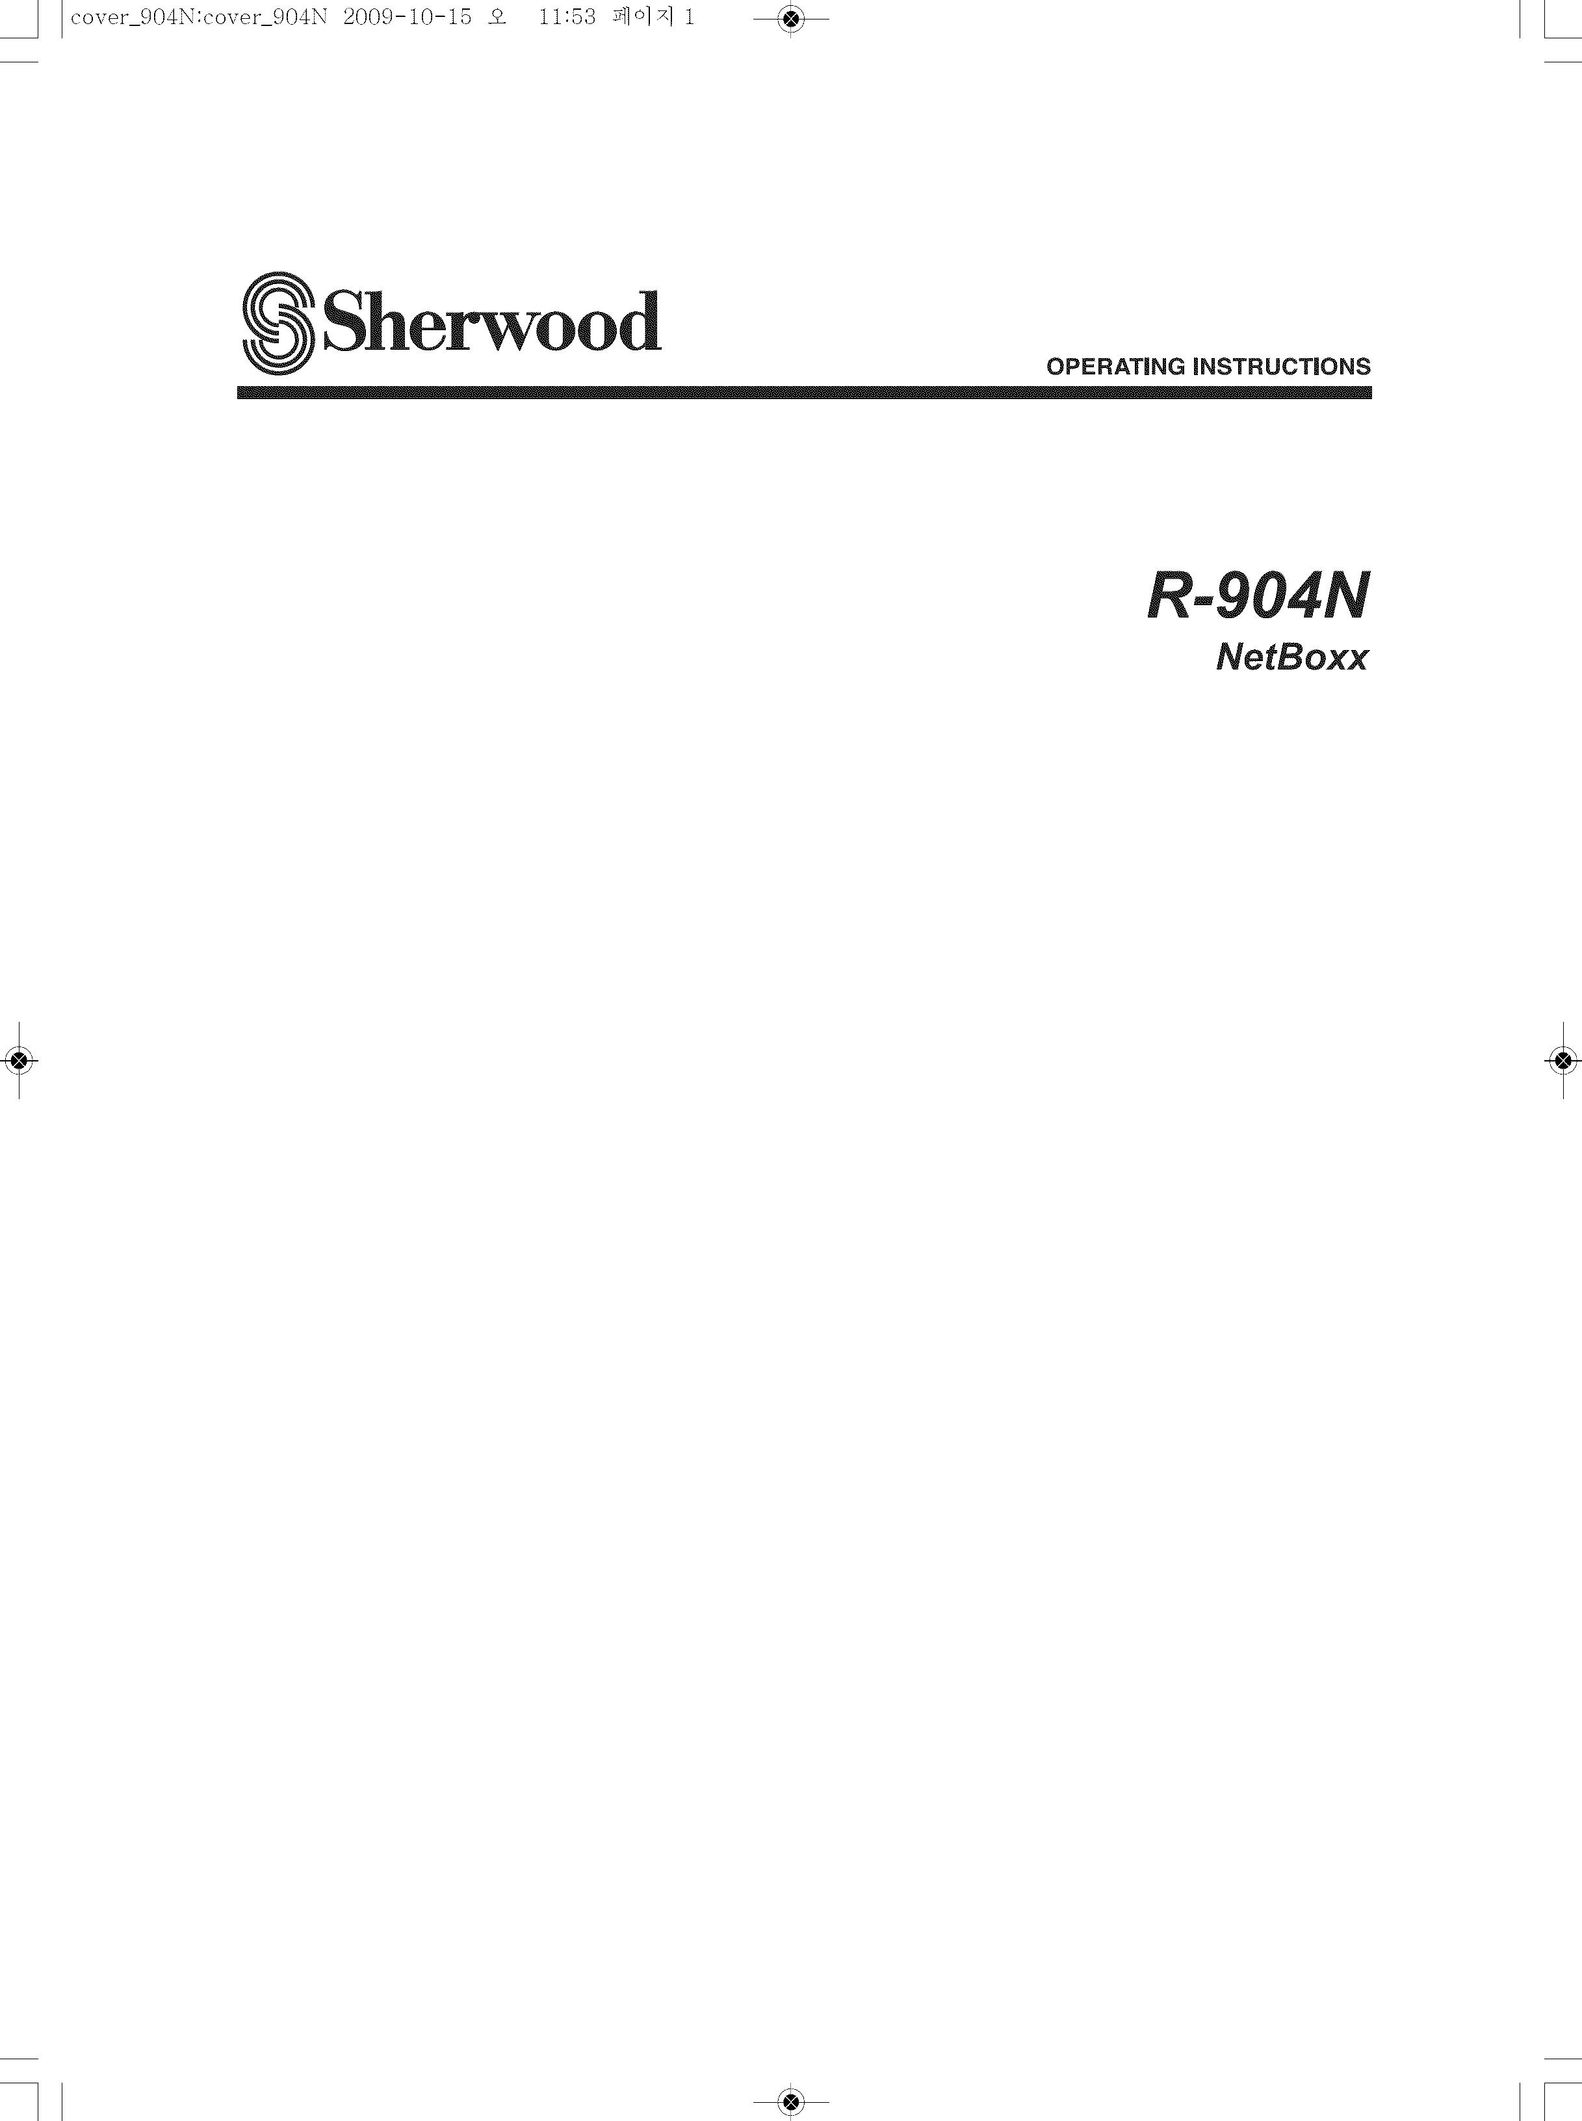 Sherwood R-904N DVD Player User Manual